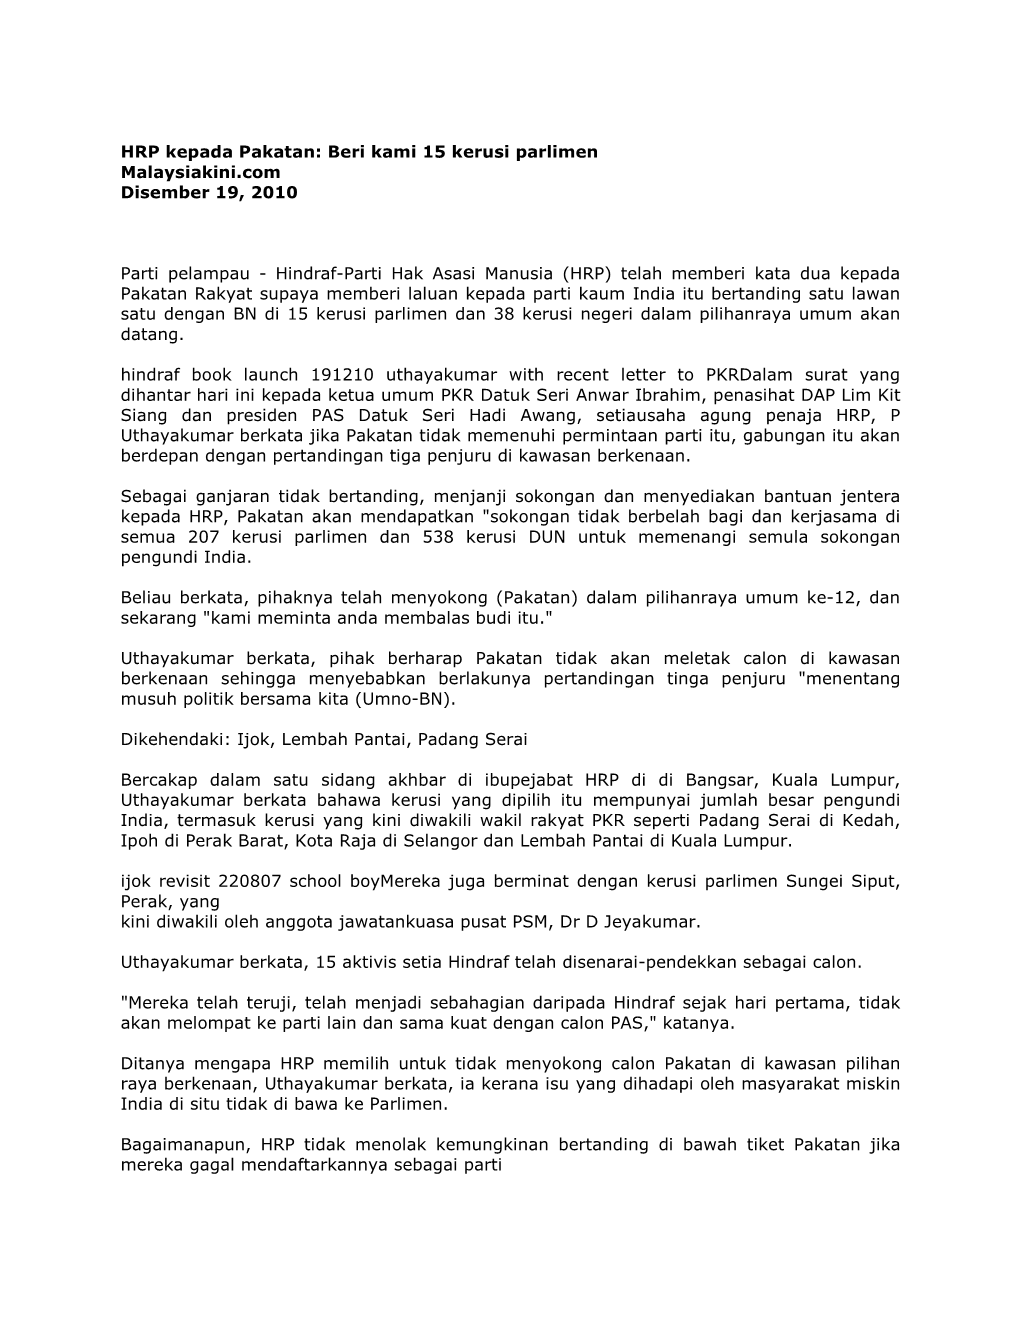 HRP Kepada Pakatan: Beri Kami 15 Kerusi Parlimen Malaysiakini.Com Disember 19, 2010 Parti Pelampau